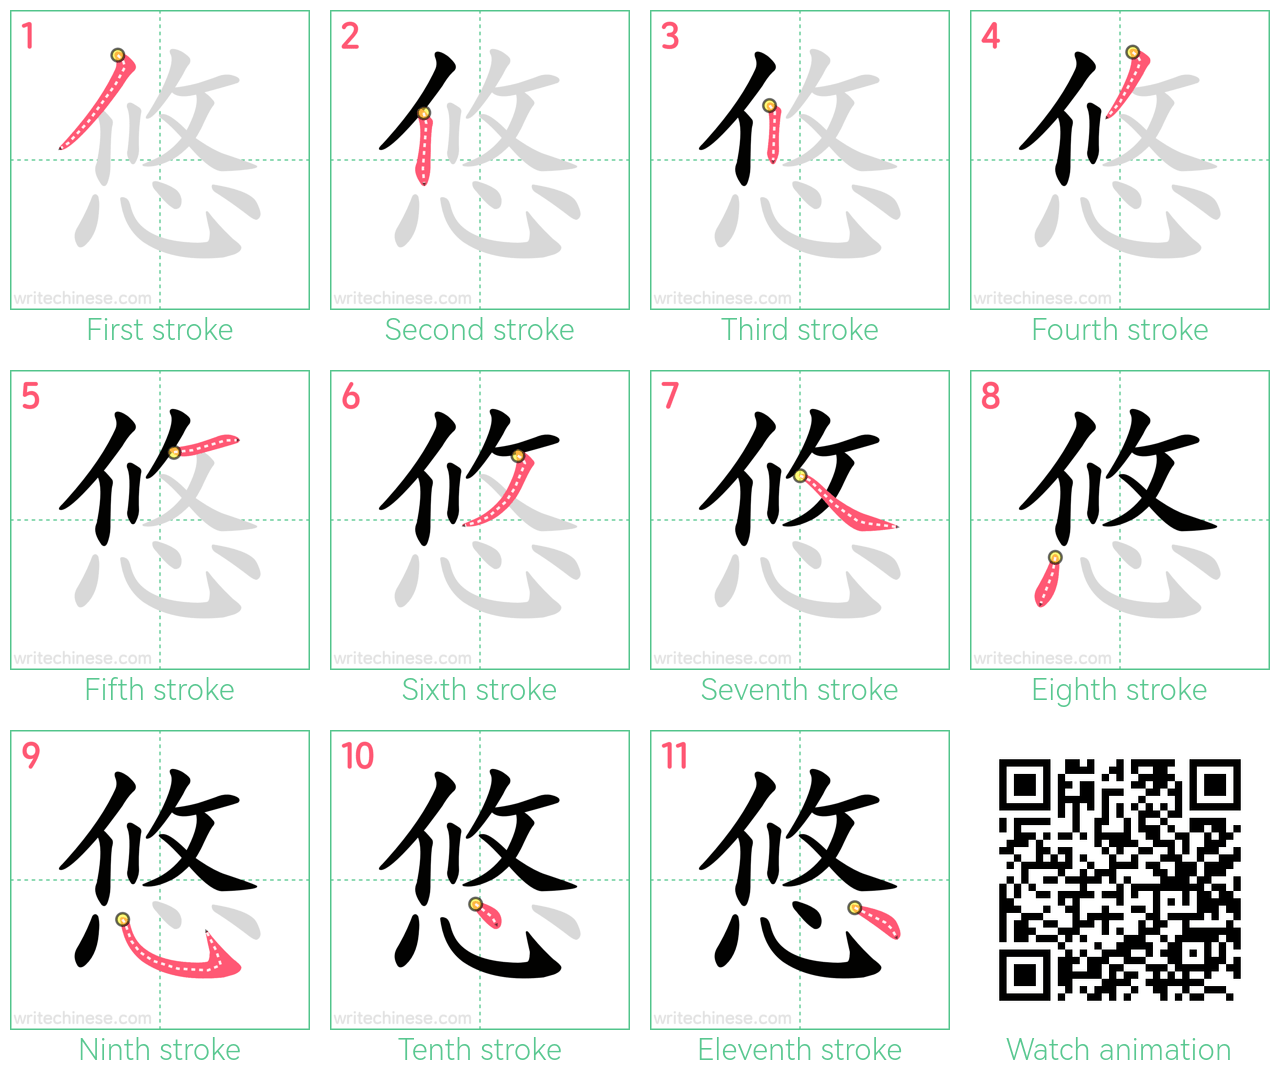 悠 step-by-step stroke order diagrams